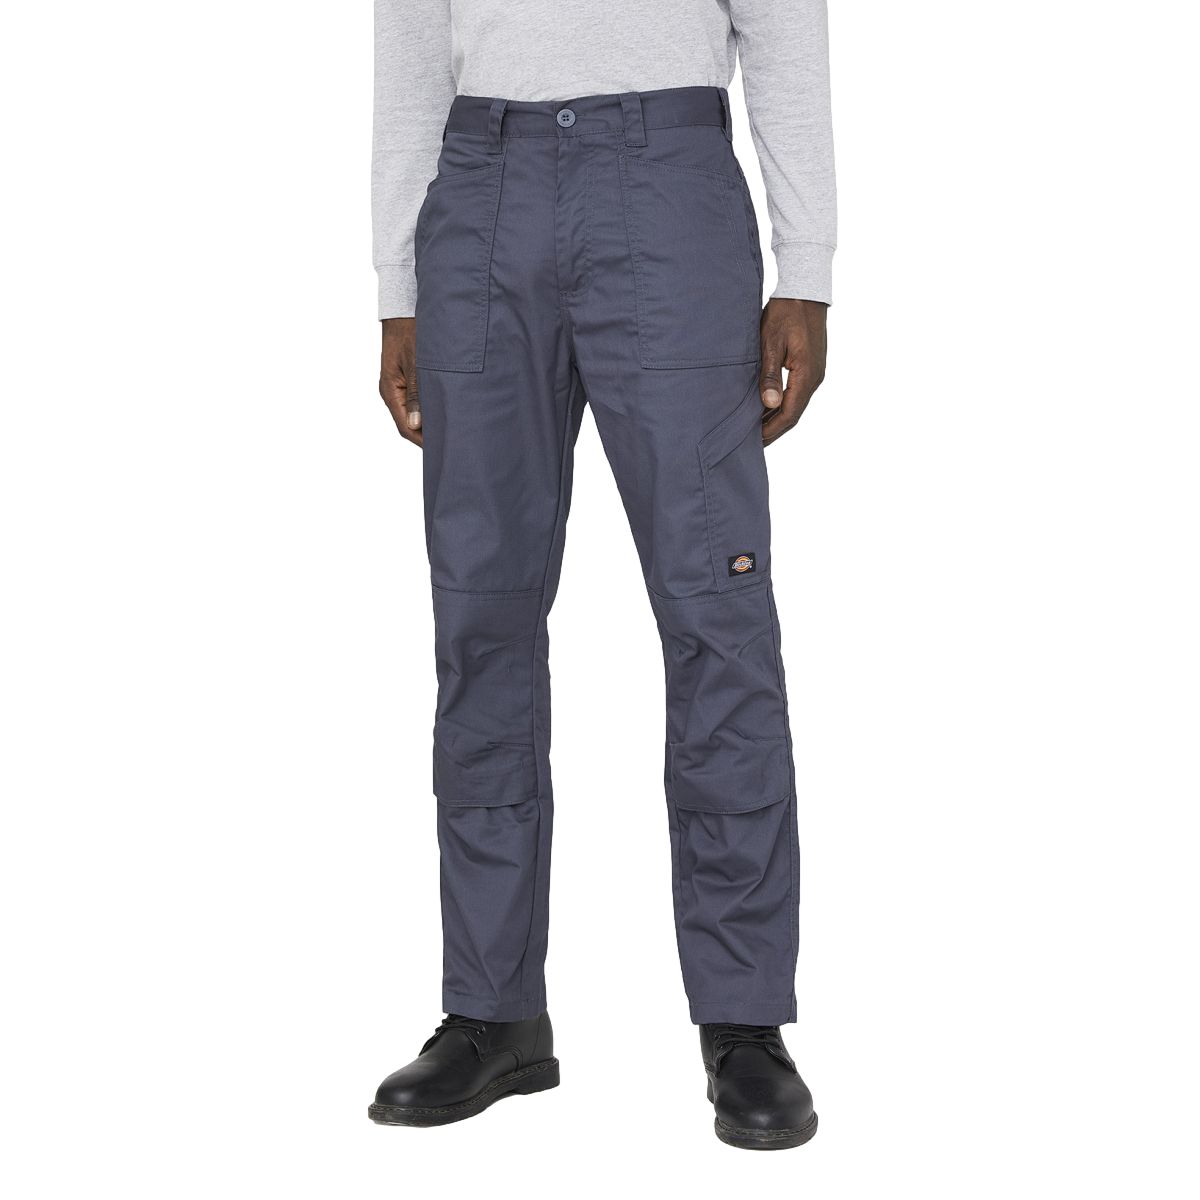 Pantalon de travail Action Flex gris - Dickies - Taille 42 0